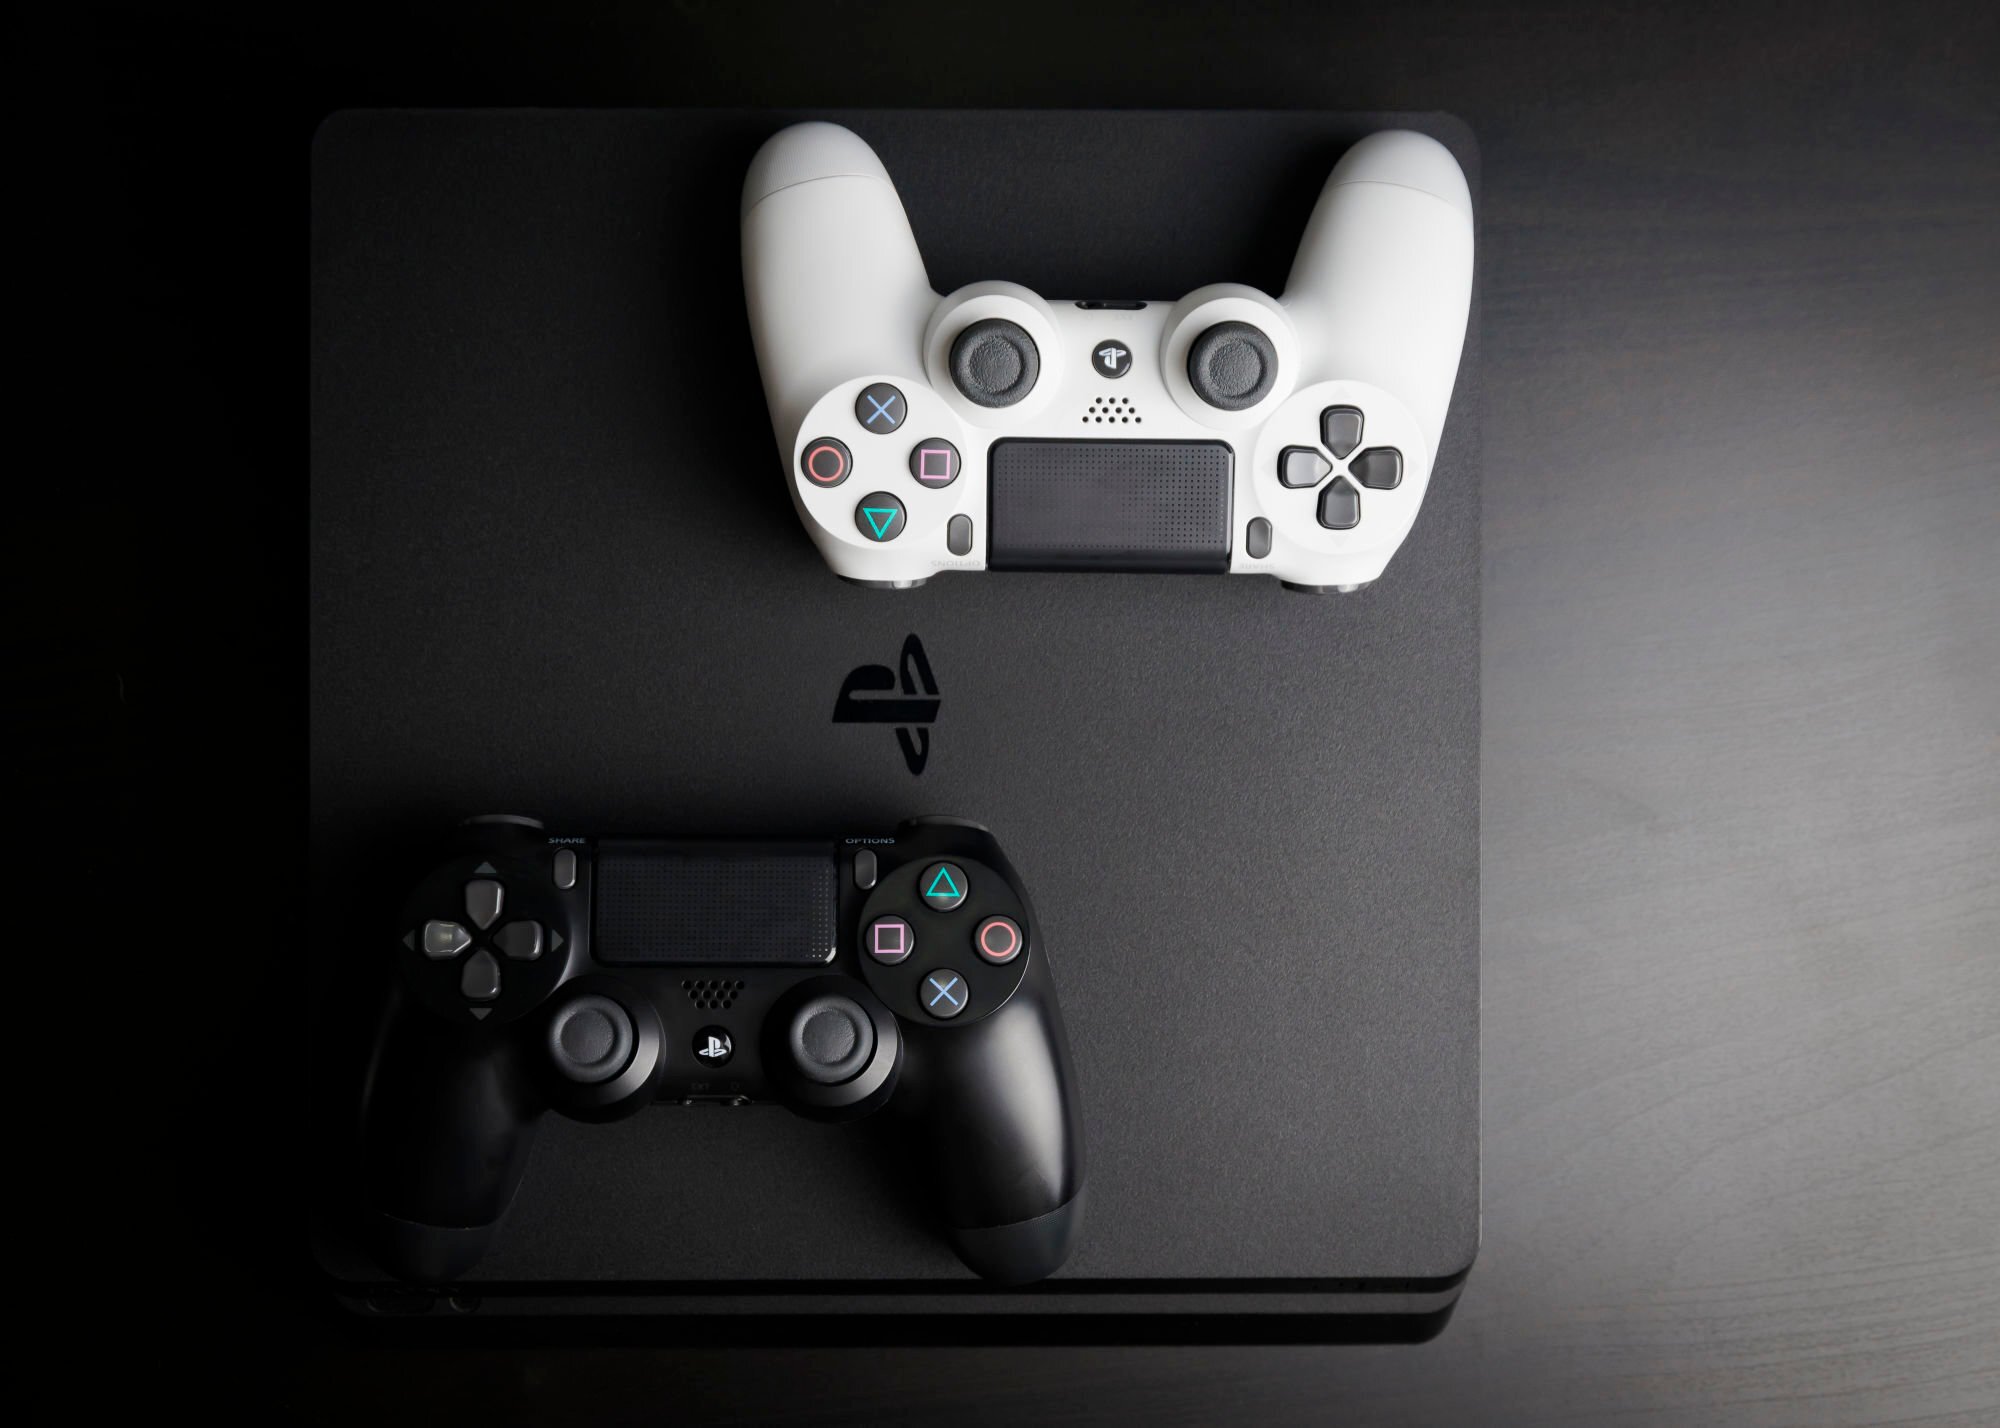 Μειώνονται οι πωλήσεις του PlayStation 4 καθώς η νέα γενιά της κονσόλας της Sony πλησιάζει